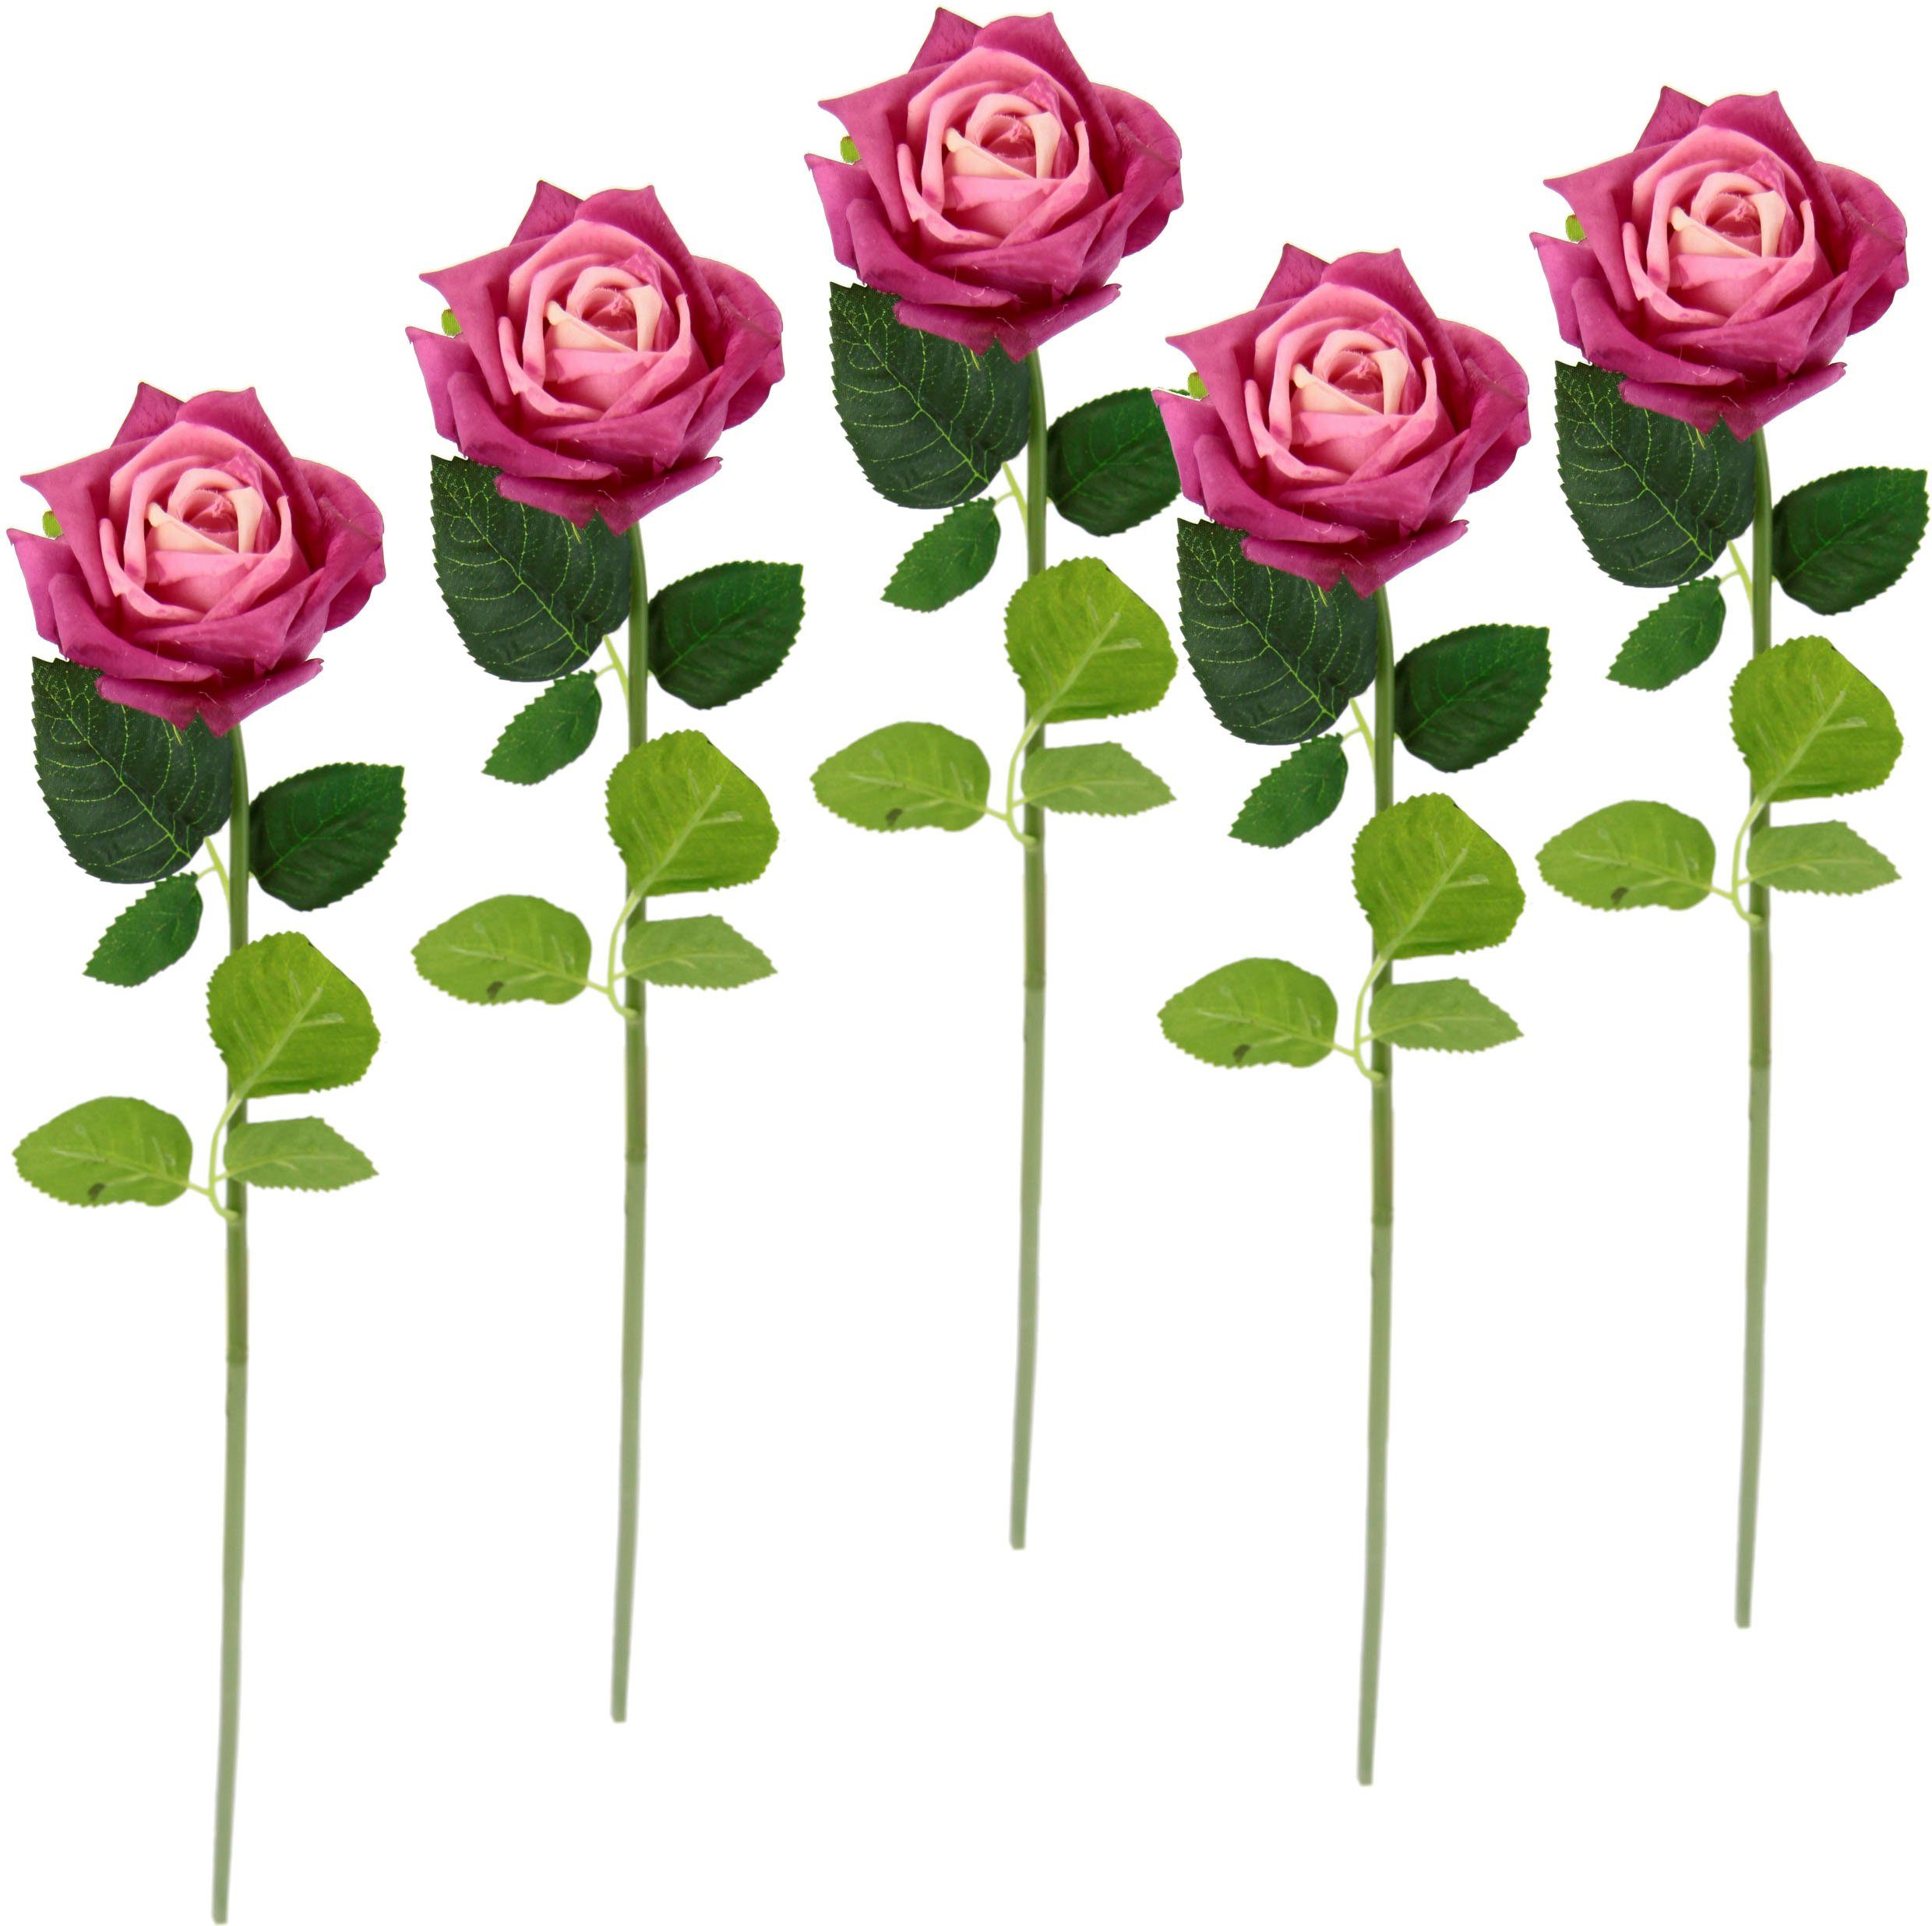 Vollendet Kunstblume Rose, I.GE.A., Höhe 45 cm, 5er pink Rosen, Kunstzweig, Seidenrosen, künstliche Kunstrose Bouquet, Set